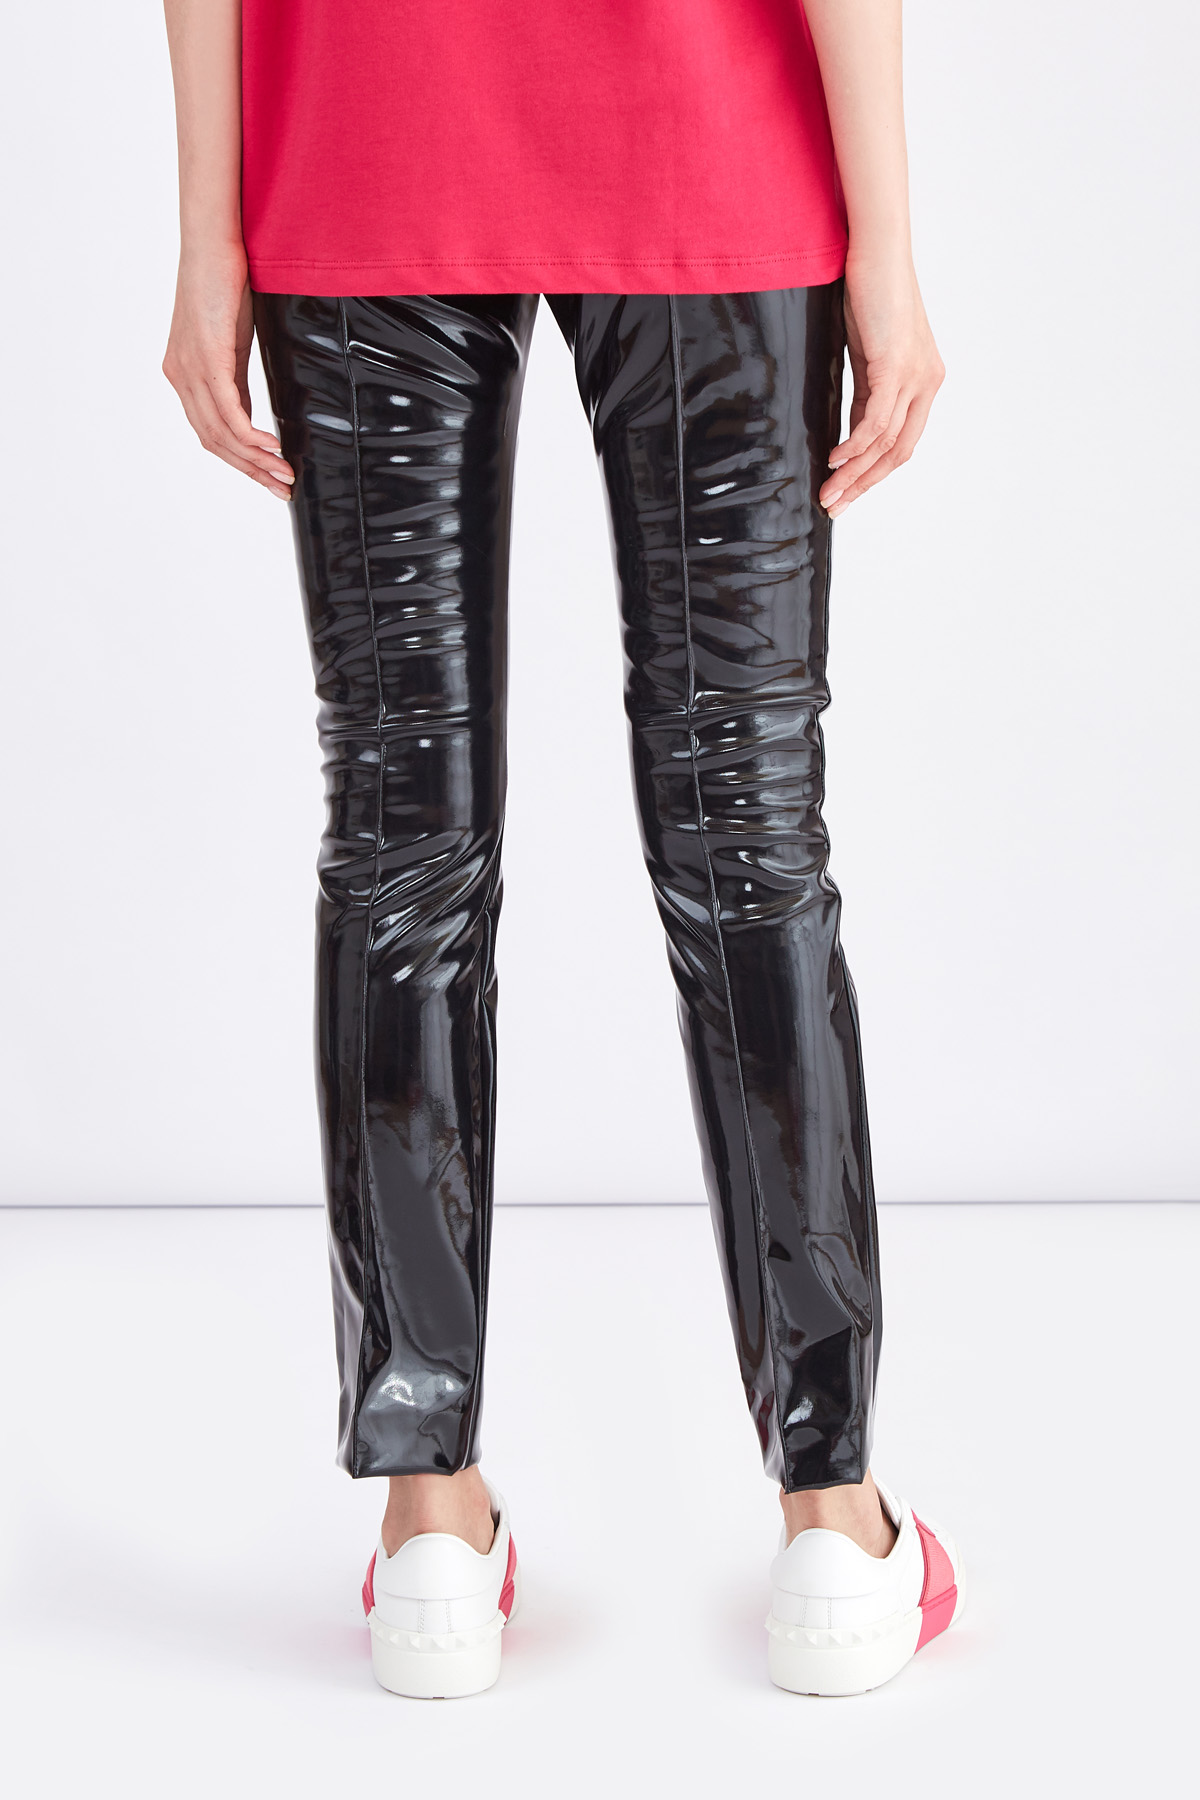 Черные брюки с глянцевым эффектом по поверхности и стрелками VALENTINO, цвет черный, размер 42 - фото 4